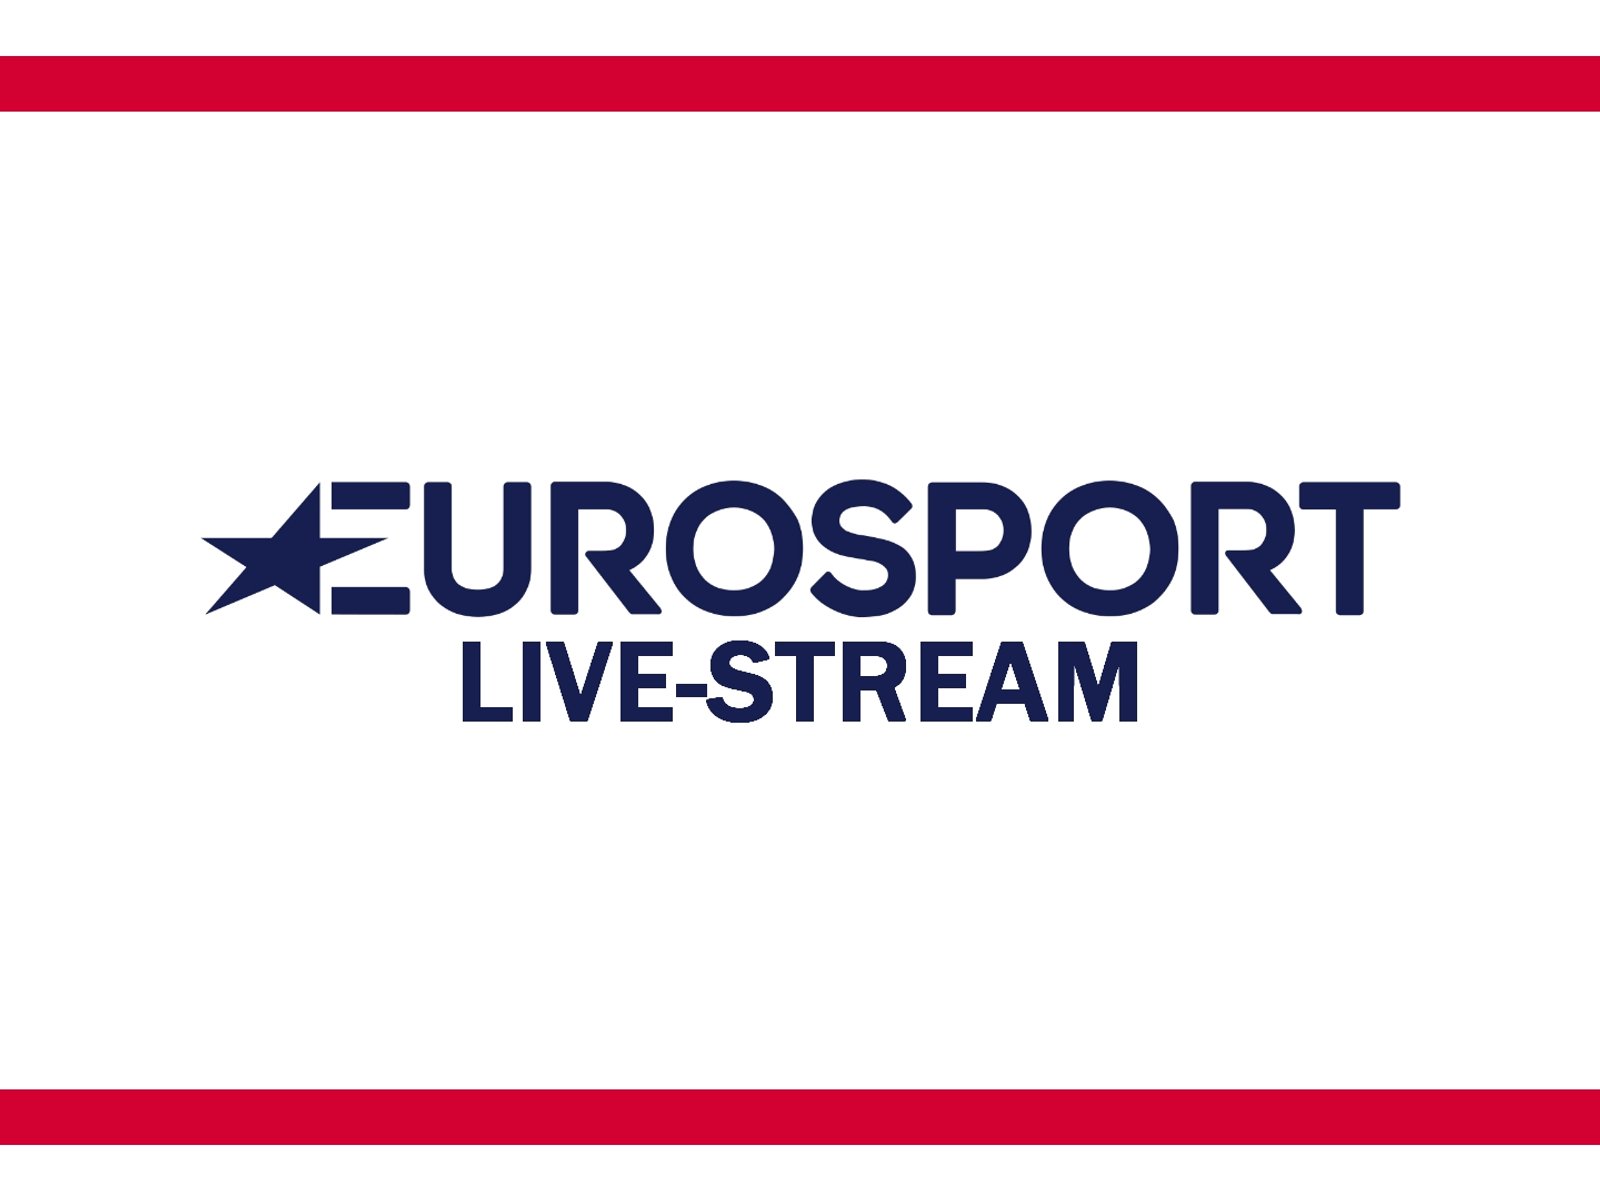 eurosport app live stream